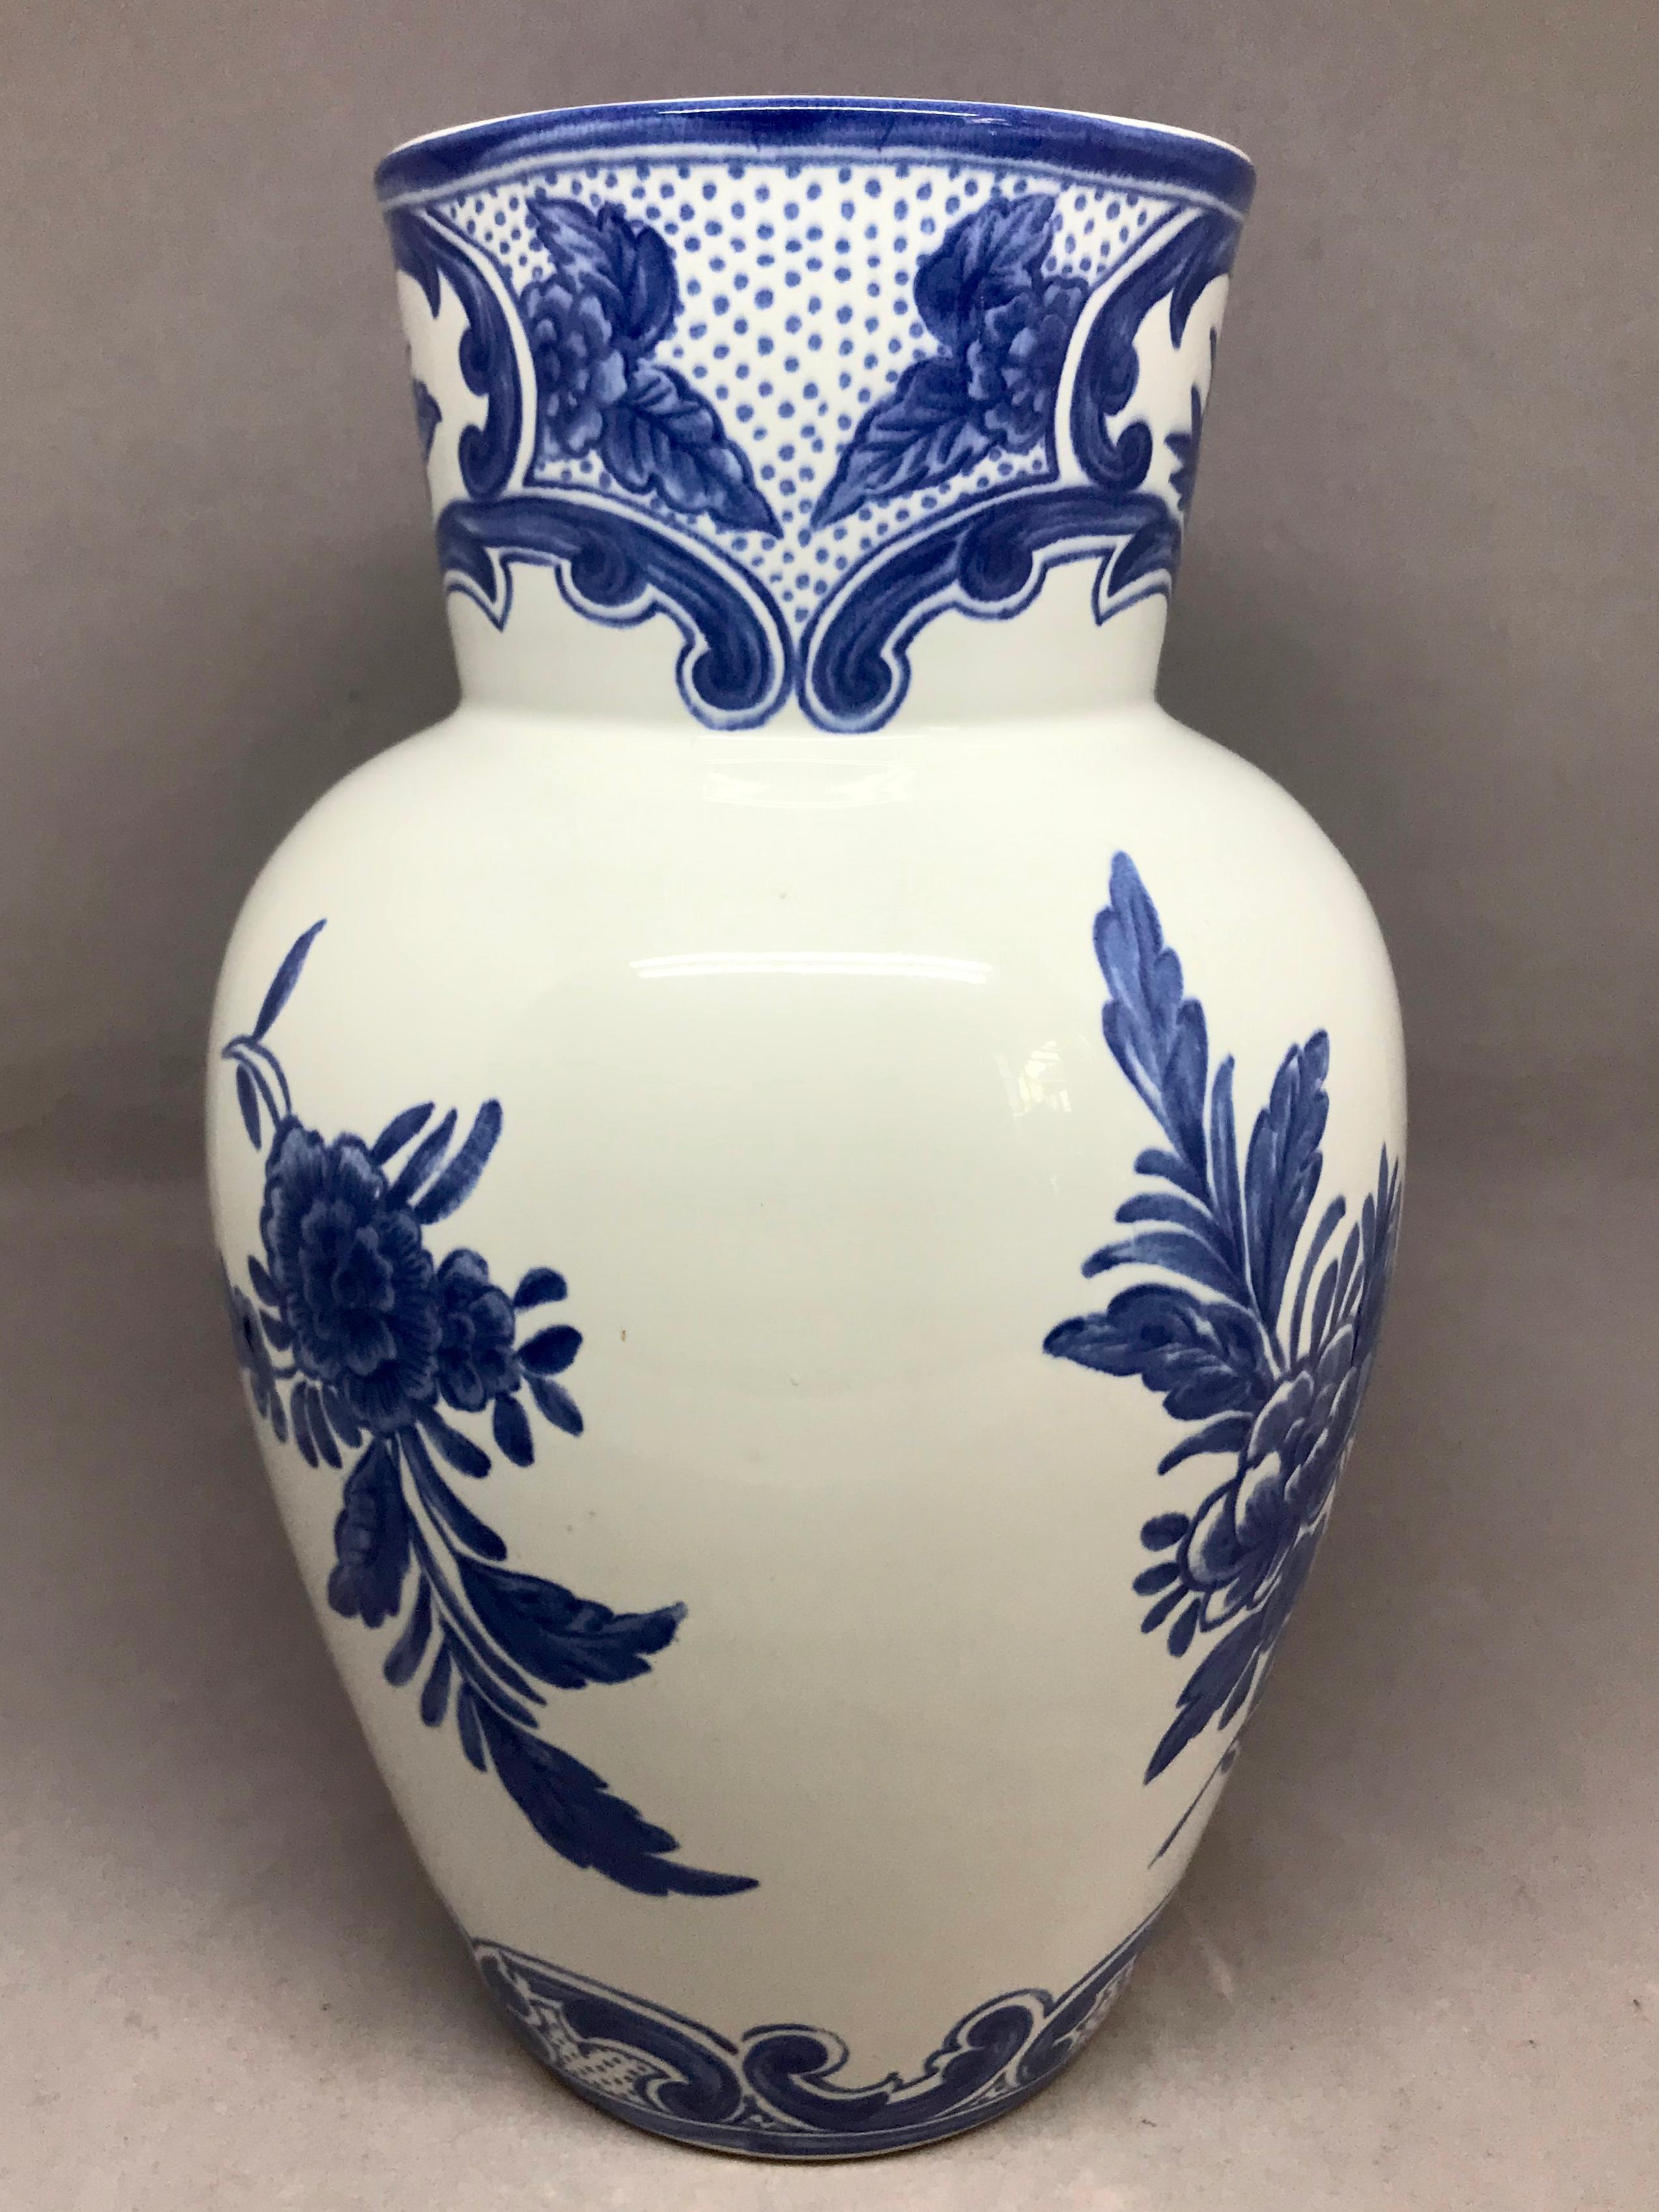 Portuguese Blue and White Delft Tiffany & Co. Vase